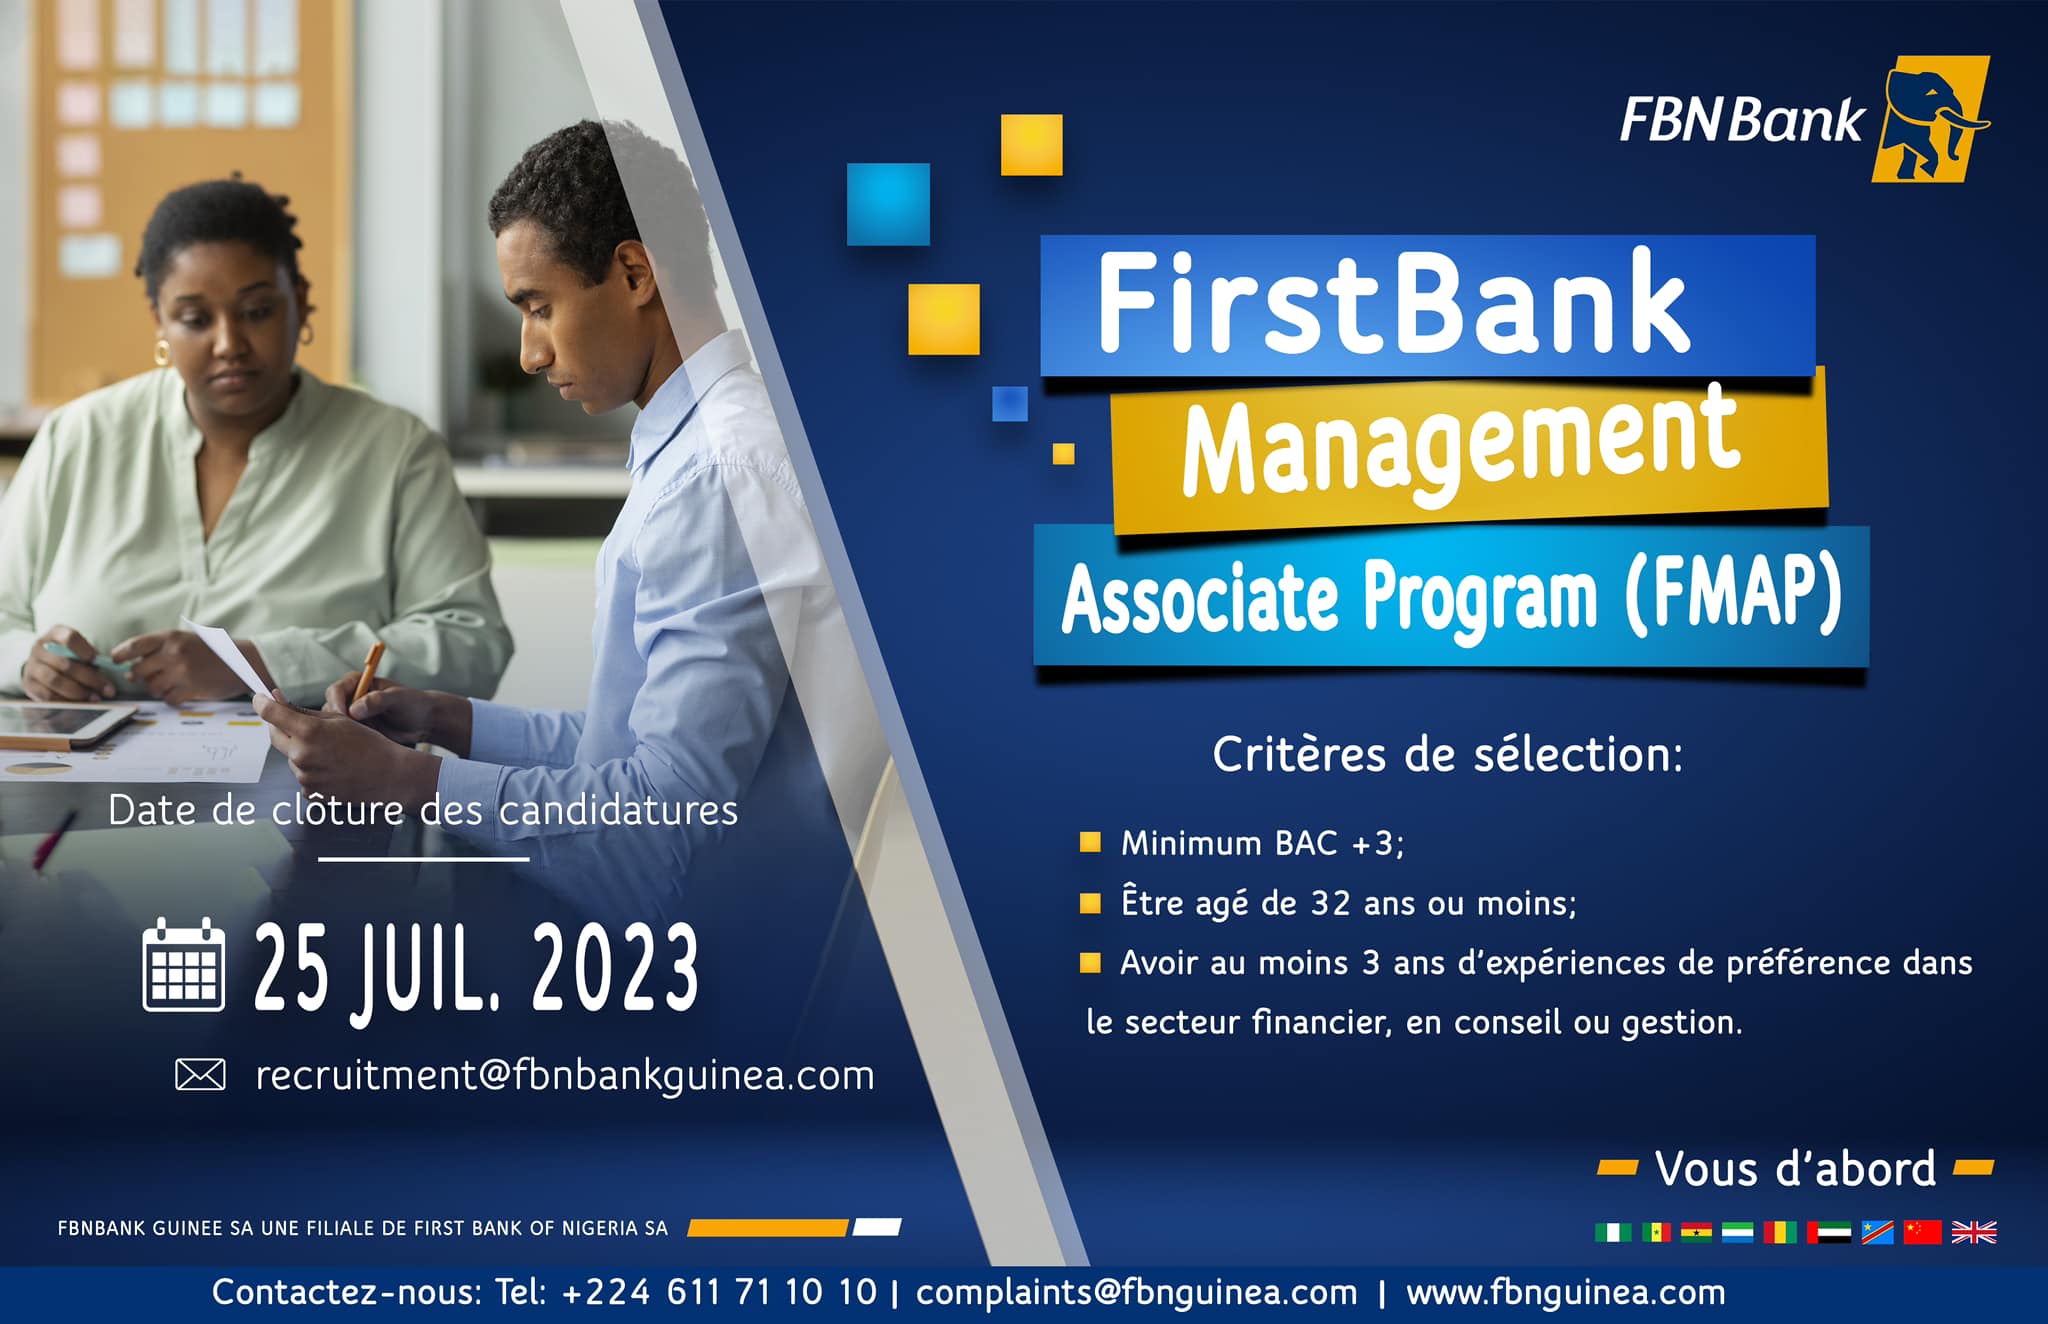 Opportunit De Carri re Participer Au FirstBank Management Associate Programme De La FBNBank